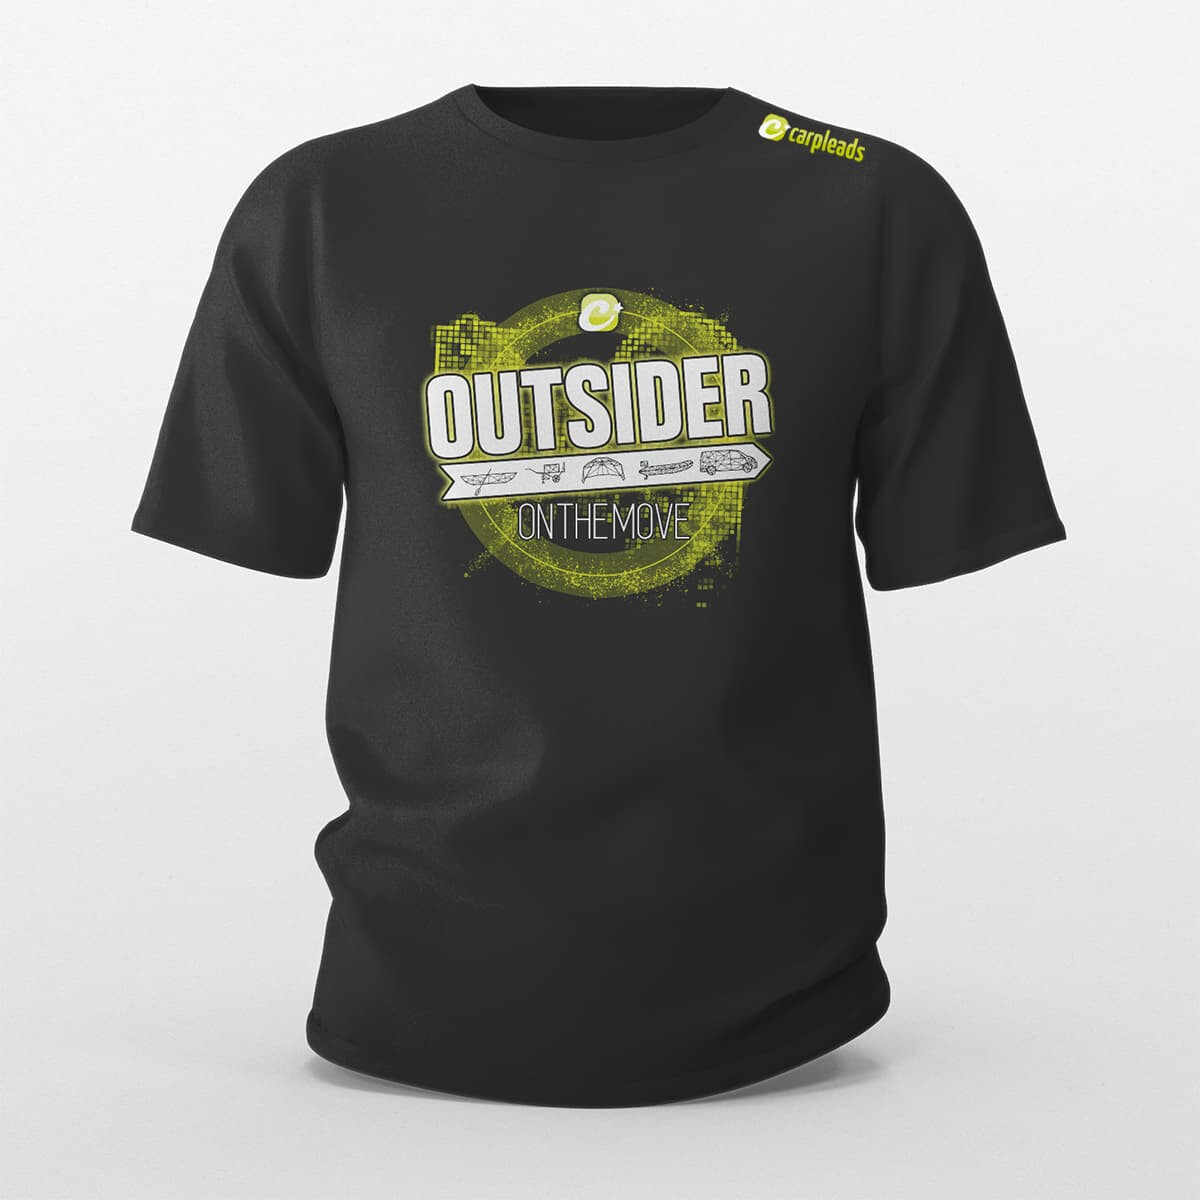 Carpleads "OUTSIDER" T-Shirt 2024 - XL